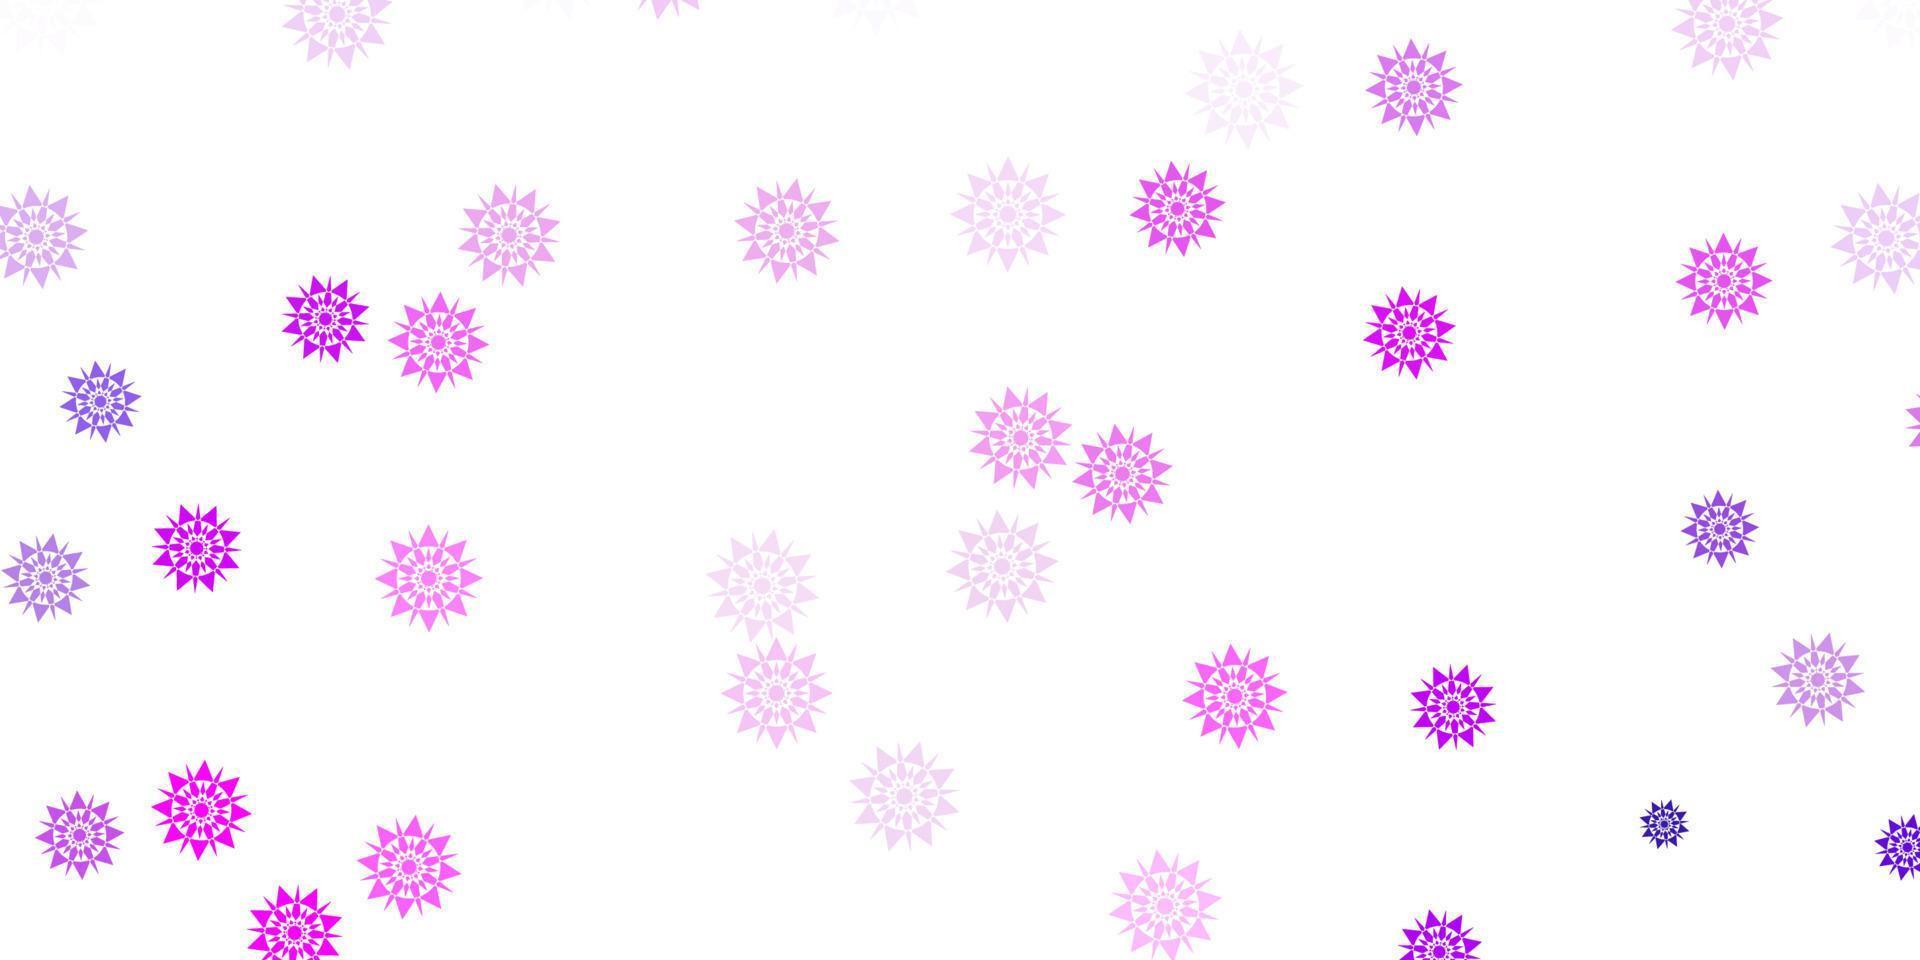 textura de vector violeta, rosa claro con copos de nieve brillantes.